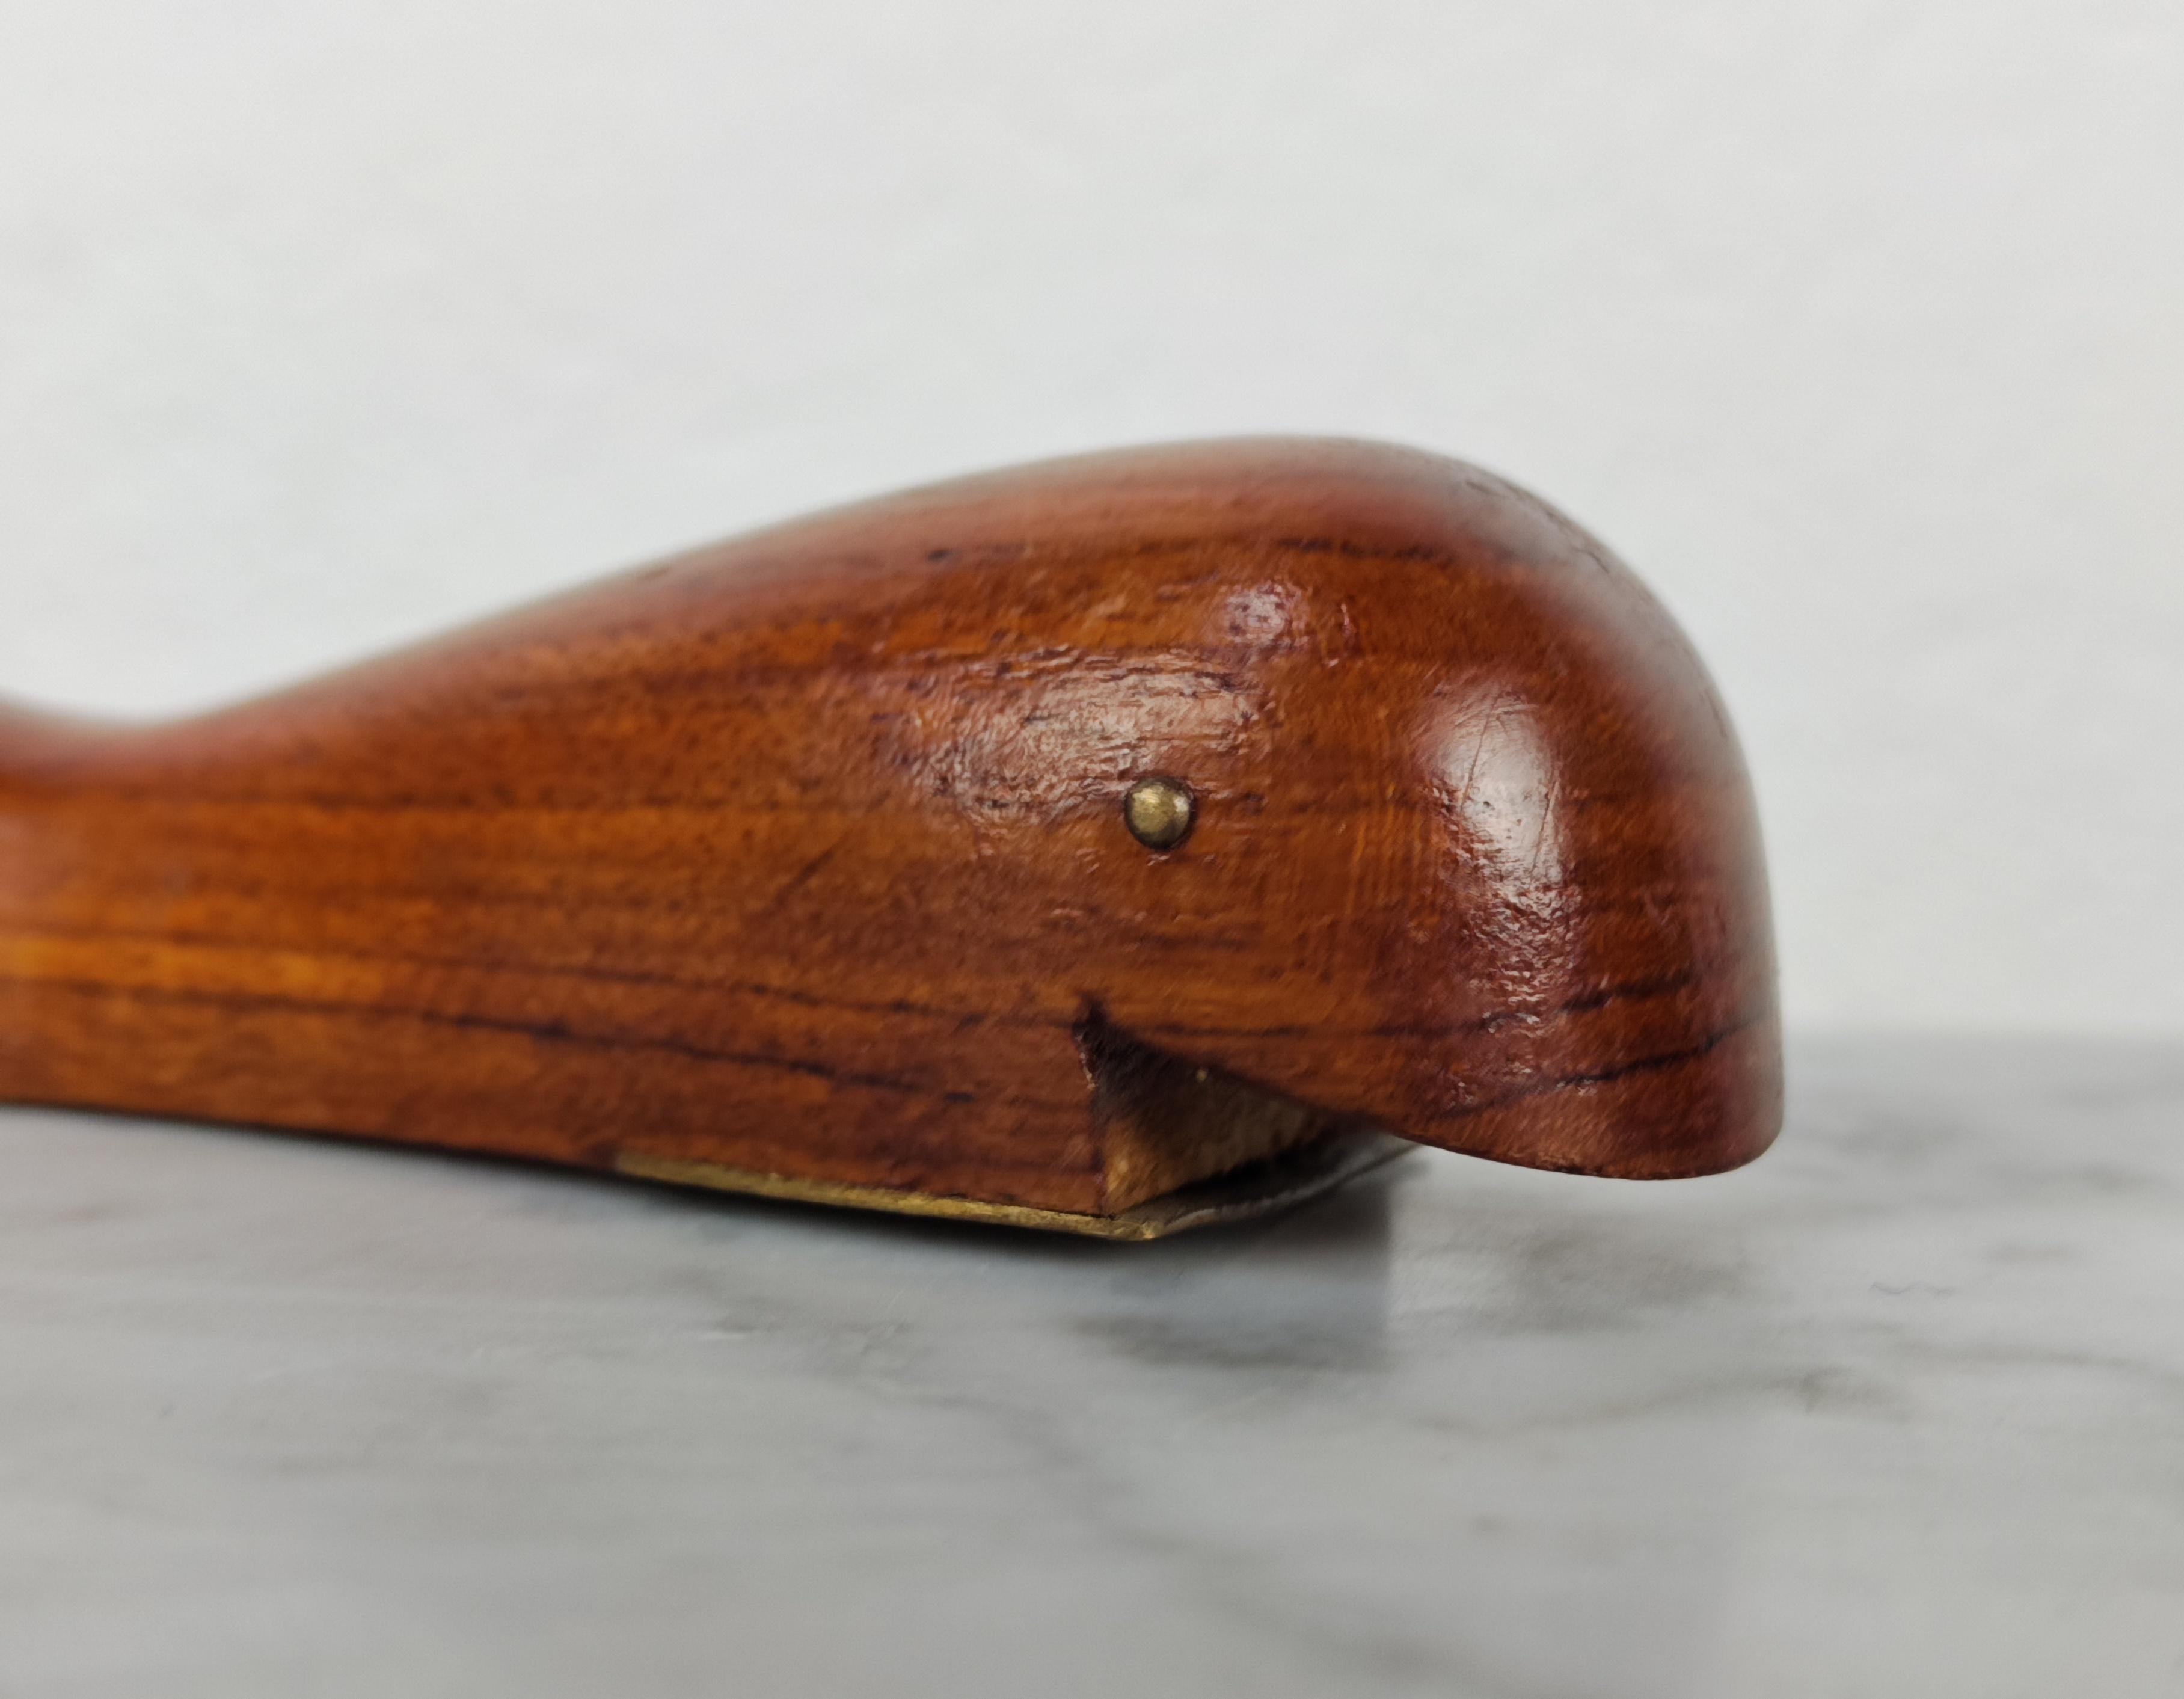 Mid Century Modern Danish Teak Wood Bottle Opener Shaped as Whale, Denmark 1960s For Sale 7